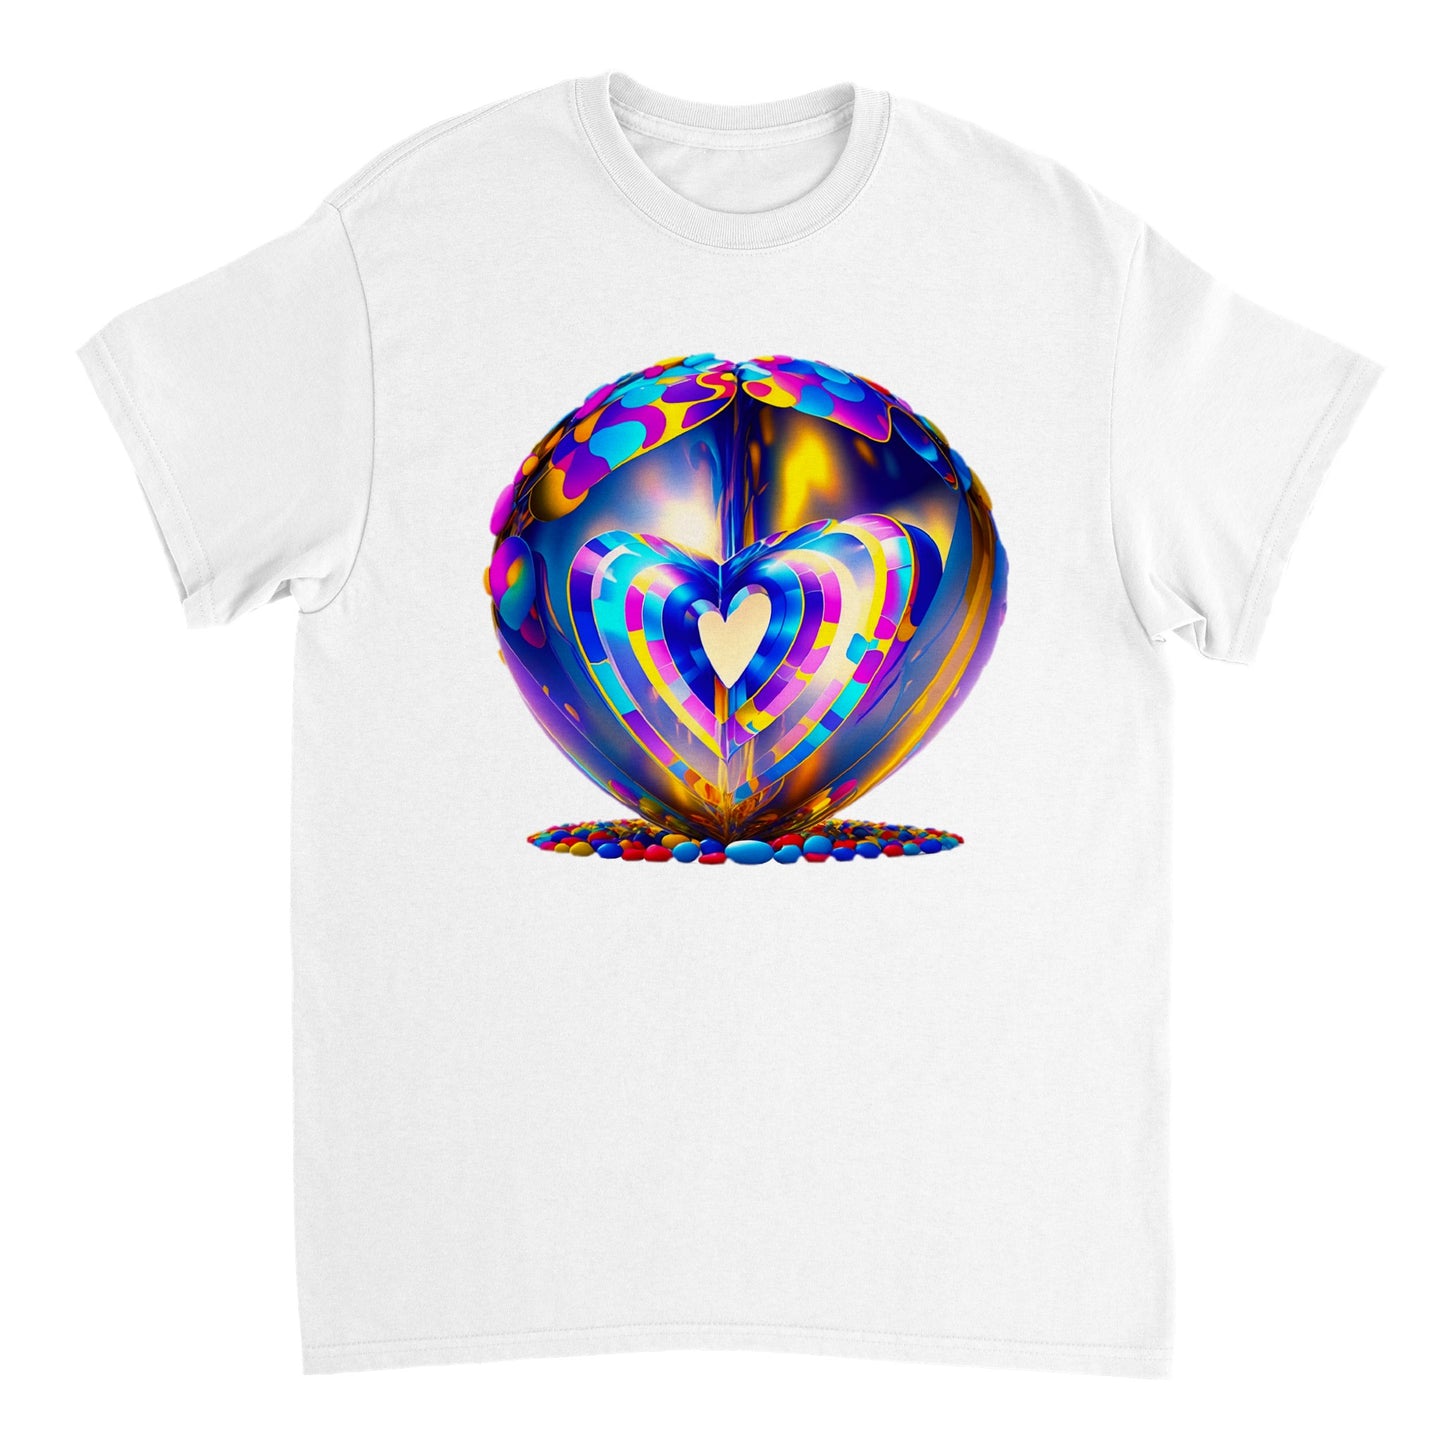 Love Heart - Heavyweight Unisex Crewneck T-shirt 95